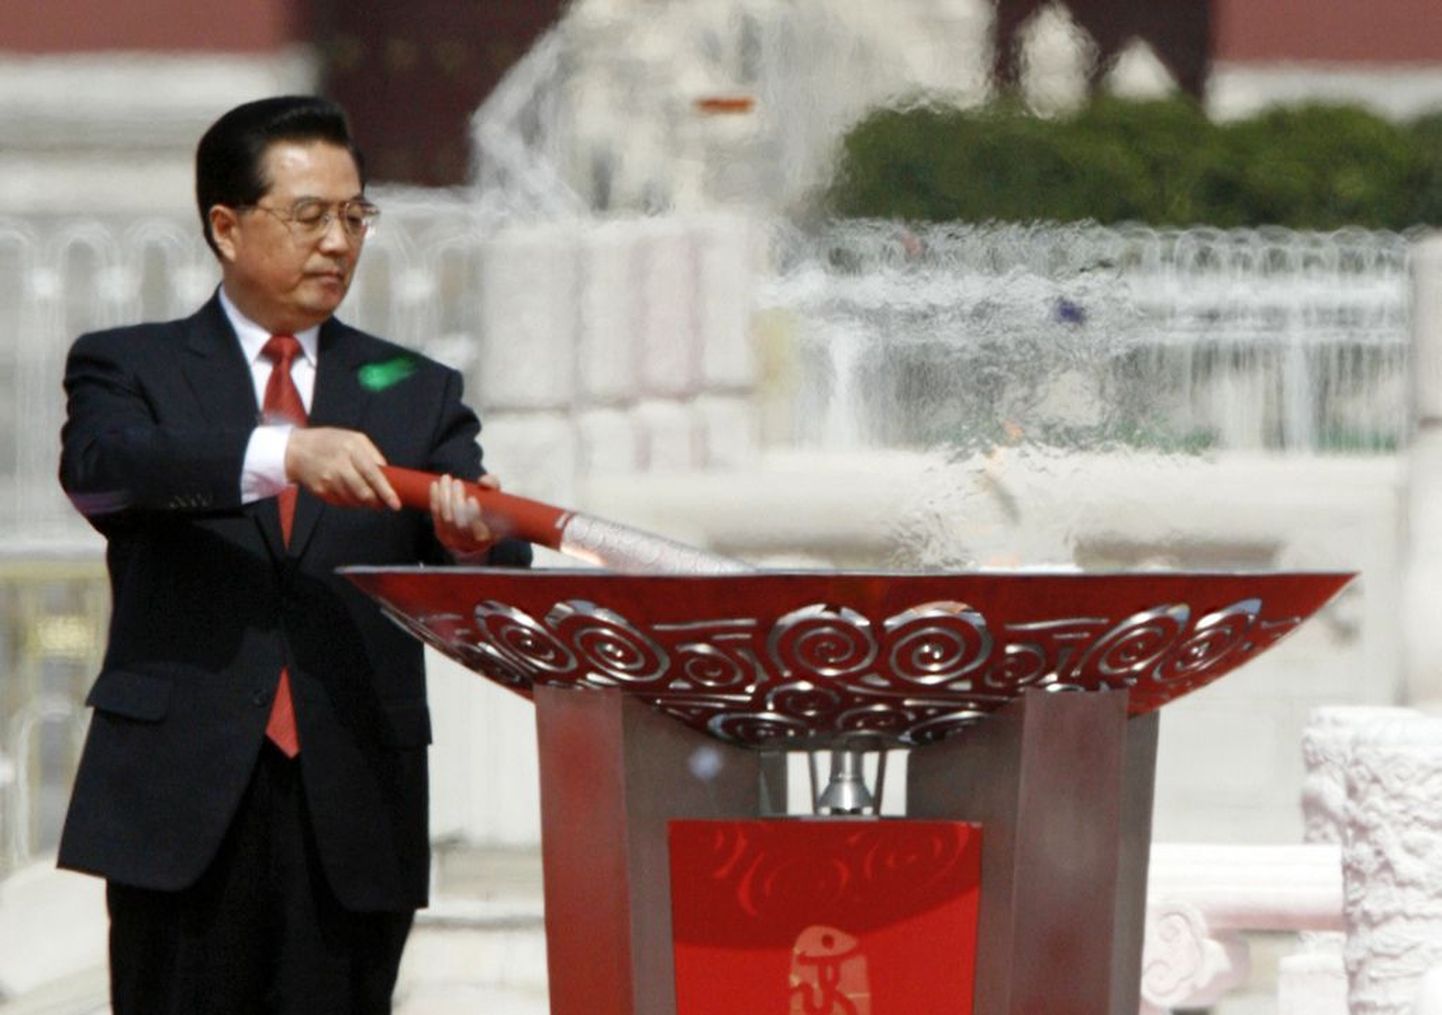 Hiina president Hu Jintao Pekingis Tiananmeni väljakul olümpiatuld süütamas.